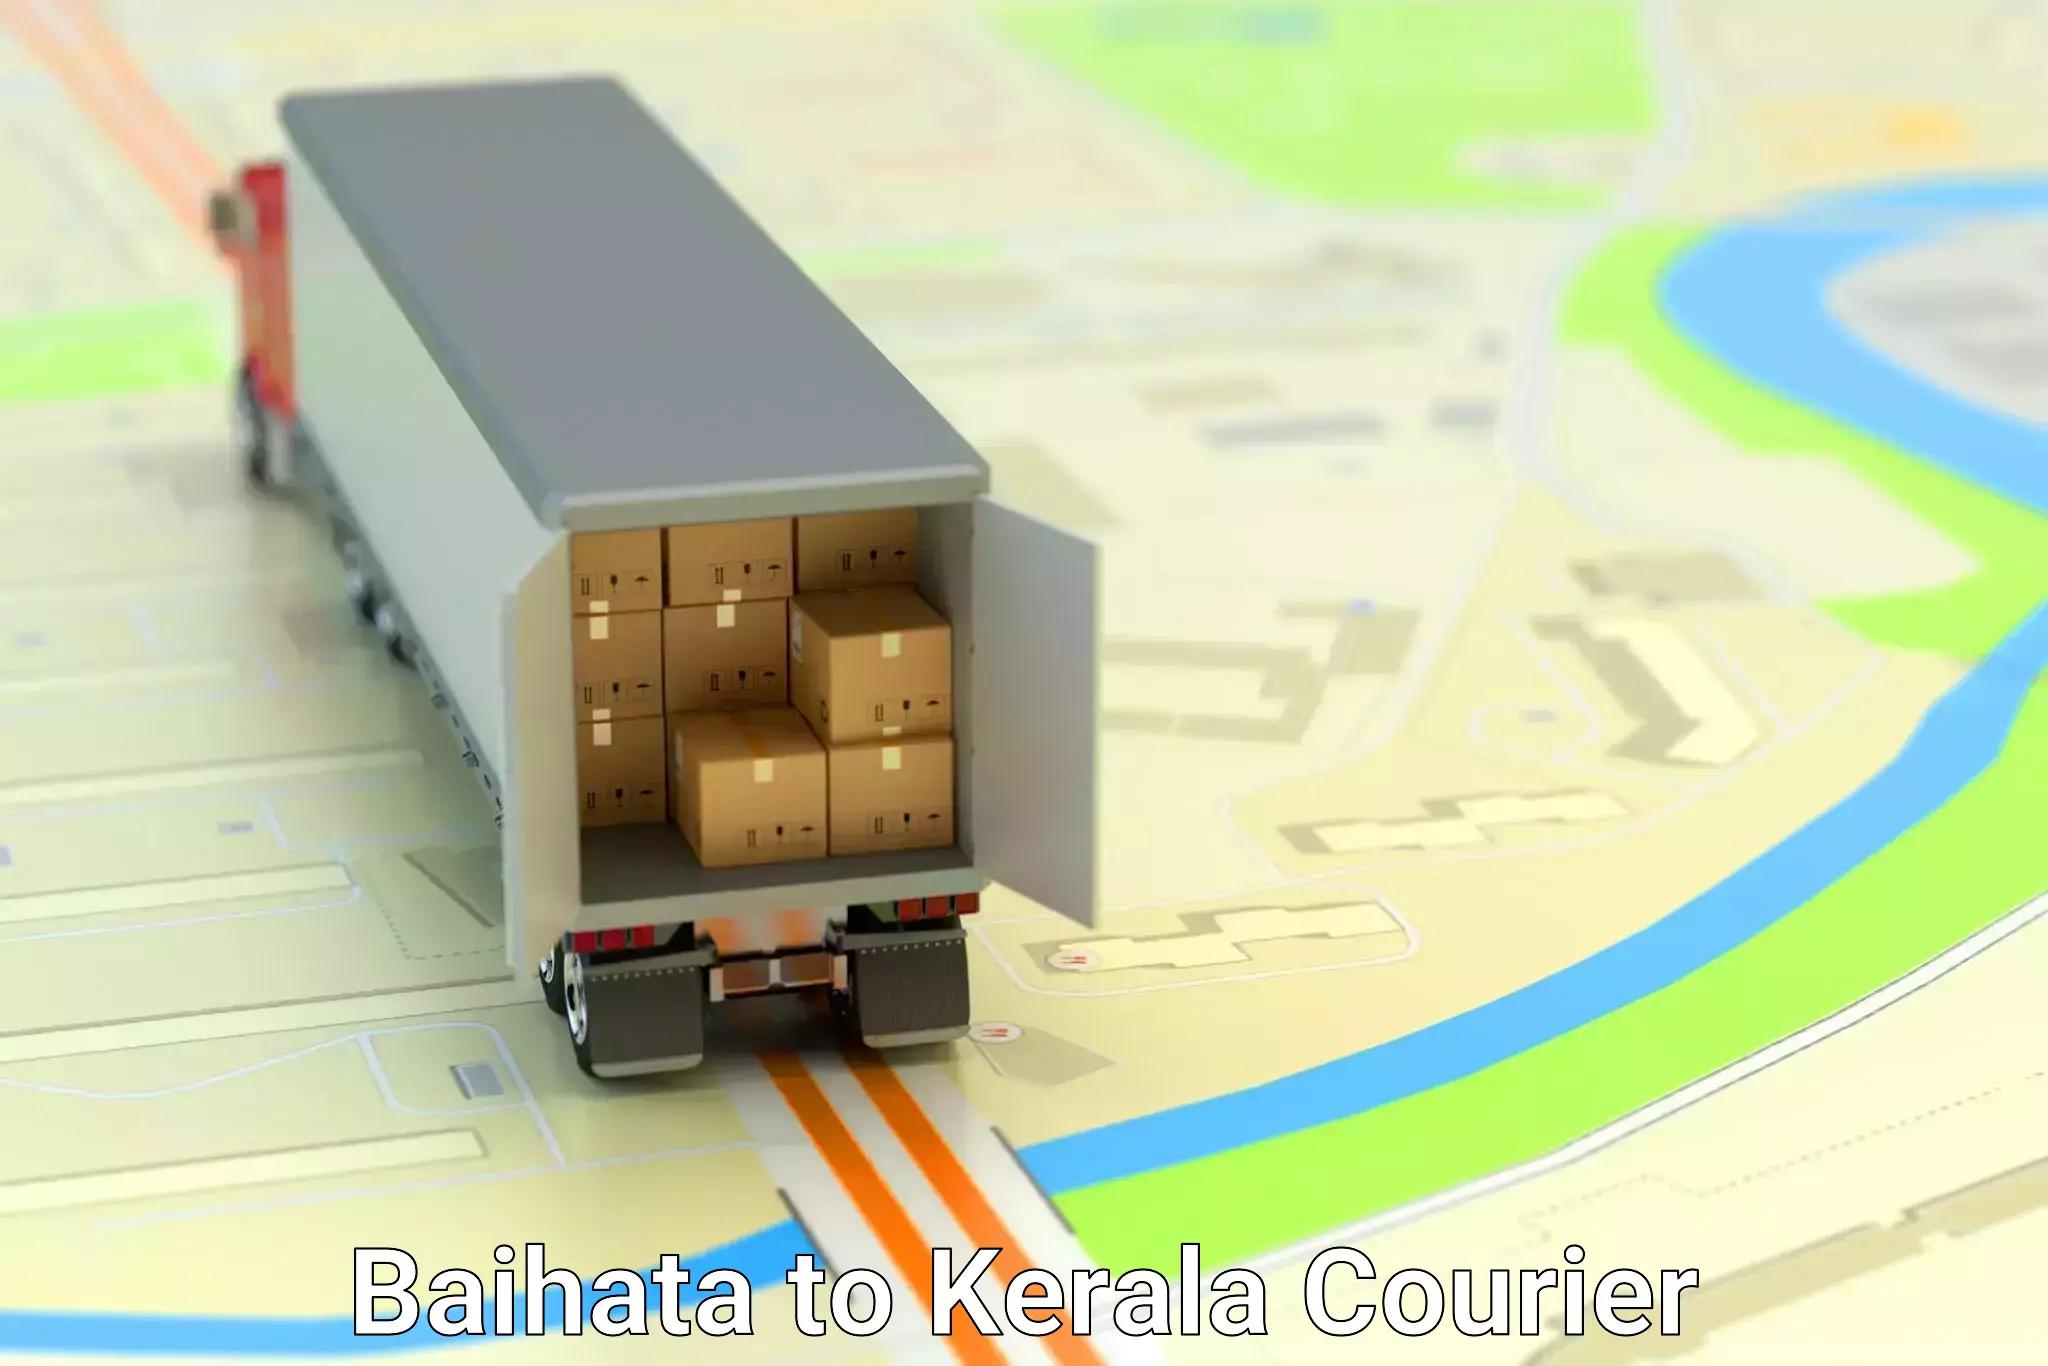 Pharmaceutical courier Baihata to Kerala